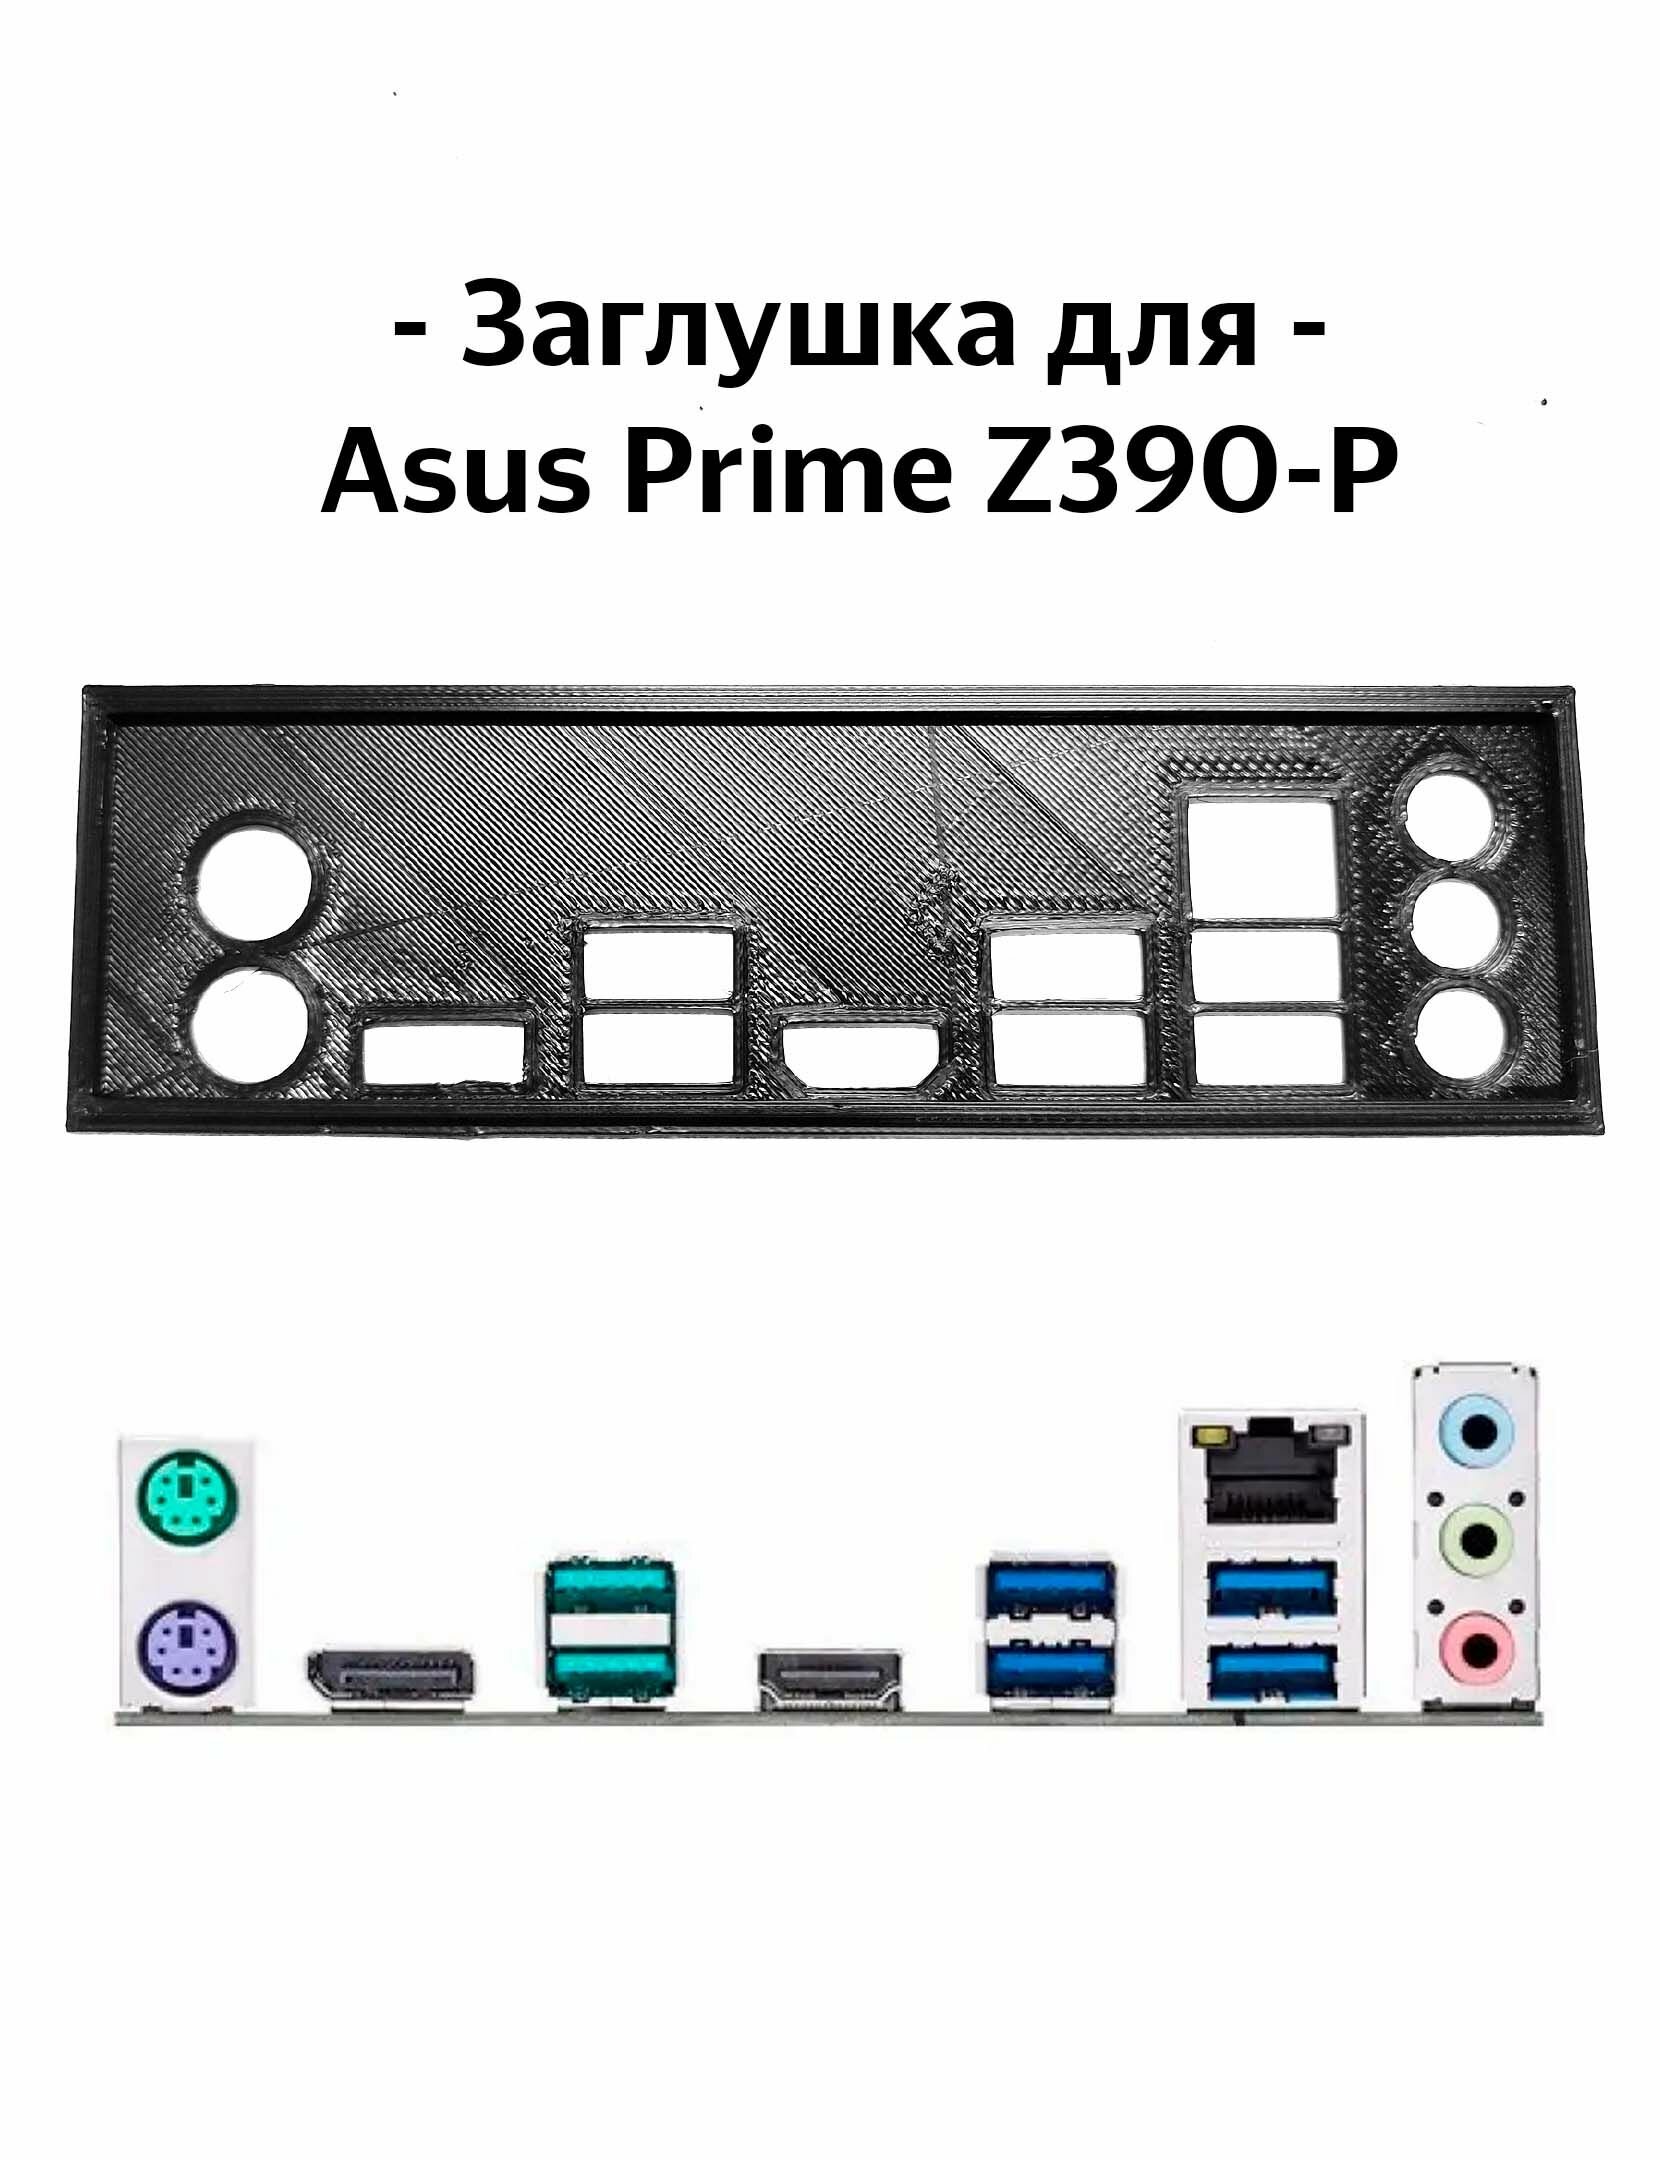 Пылезащитная заглушка, задняя панель для материнской платы Asus Prime Z390-P